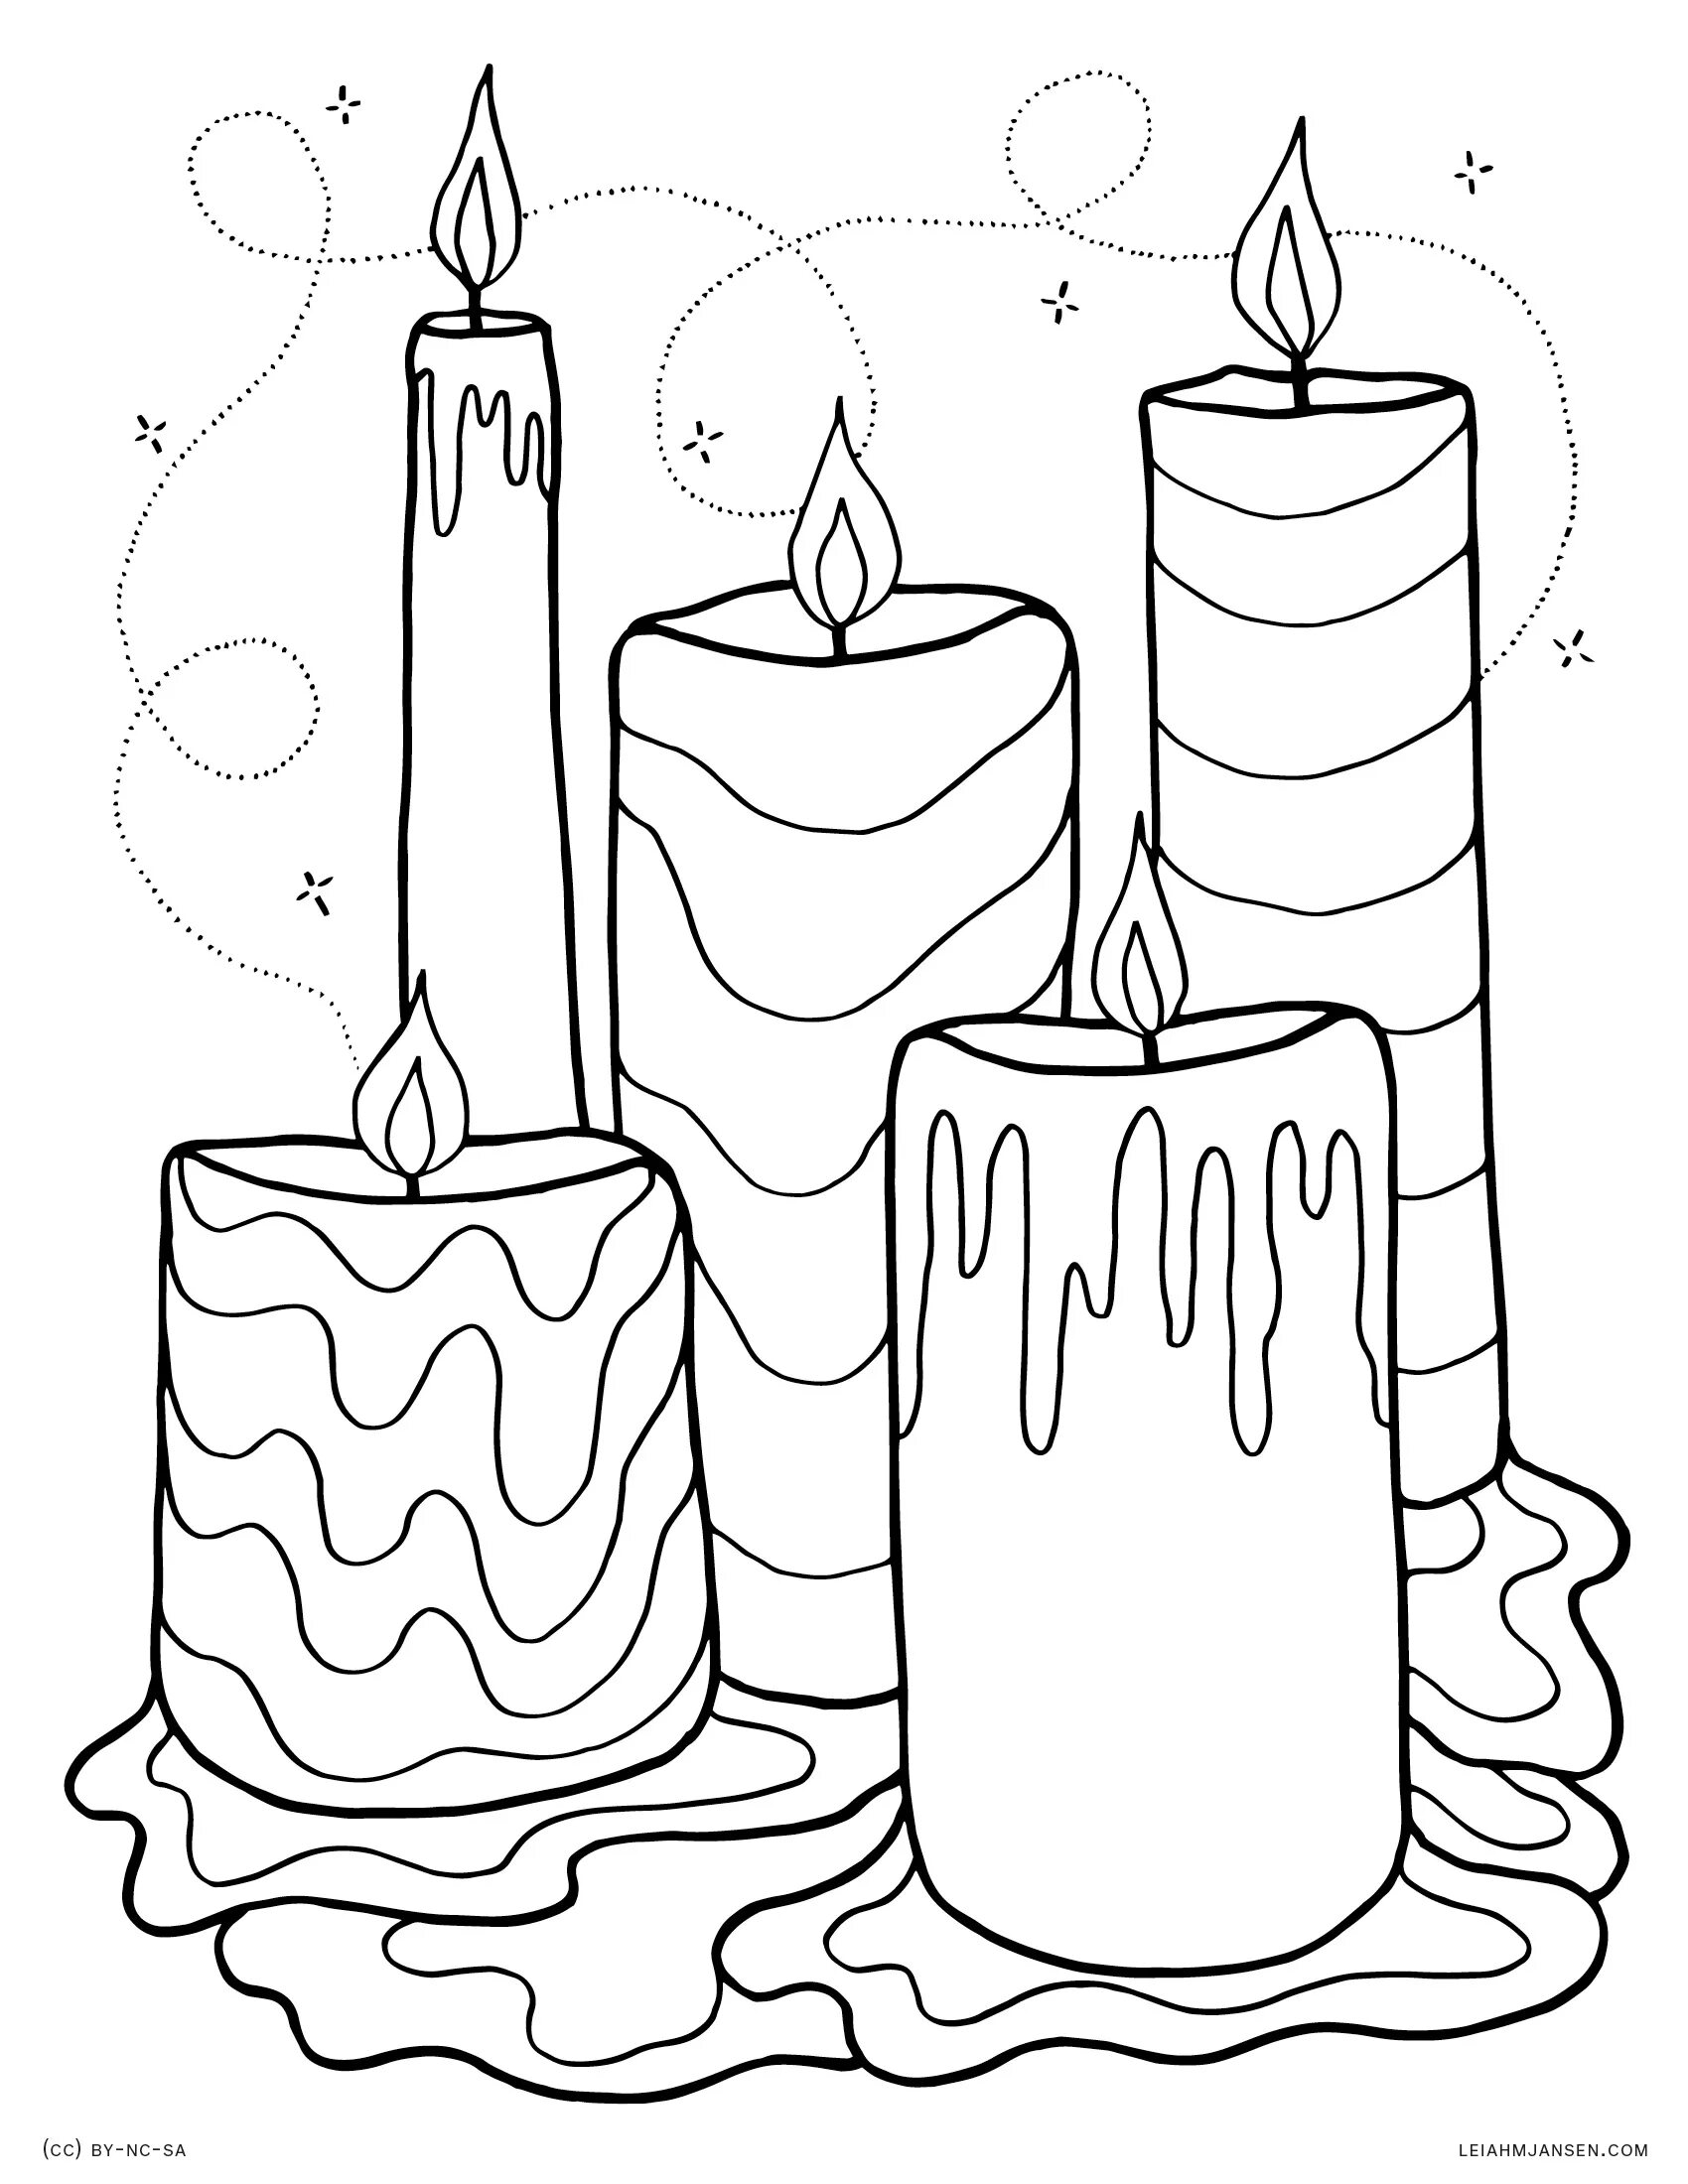 Свечка раскраска. Свеча раскраска для детей. Свеча рисунок. Новогодняя свеча раскраска.